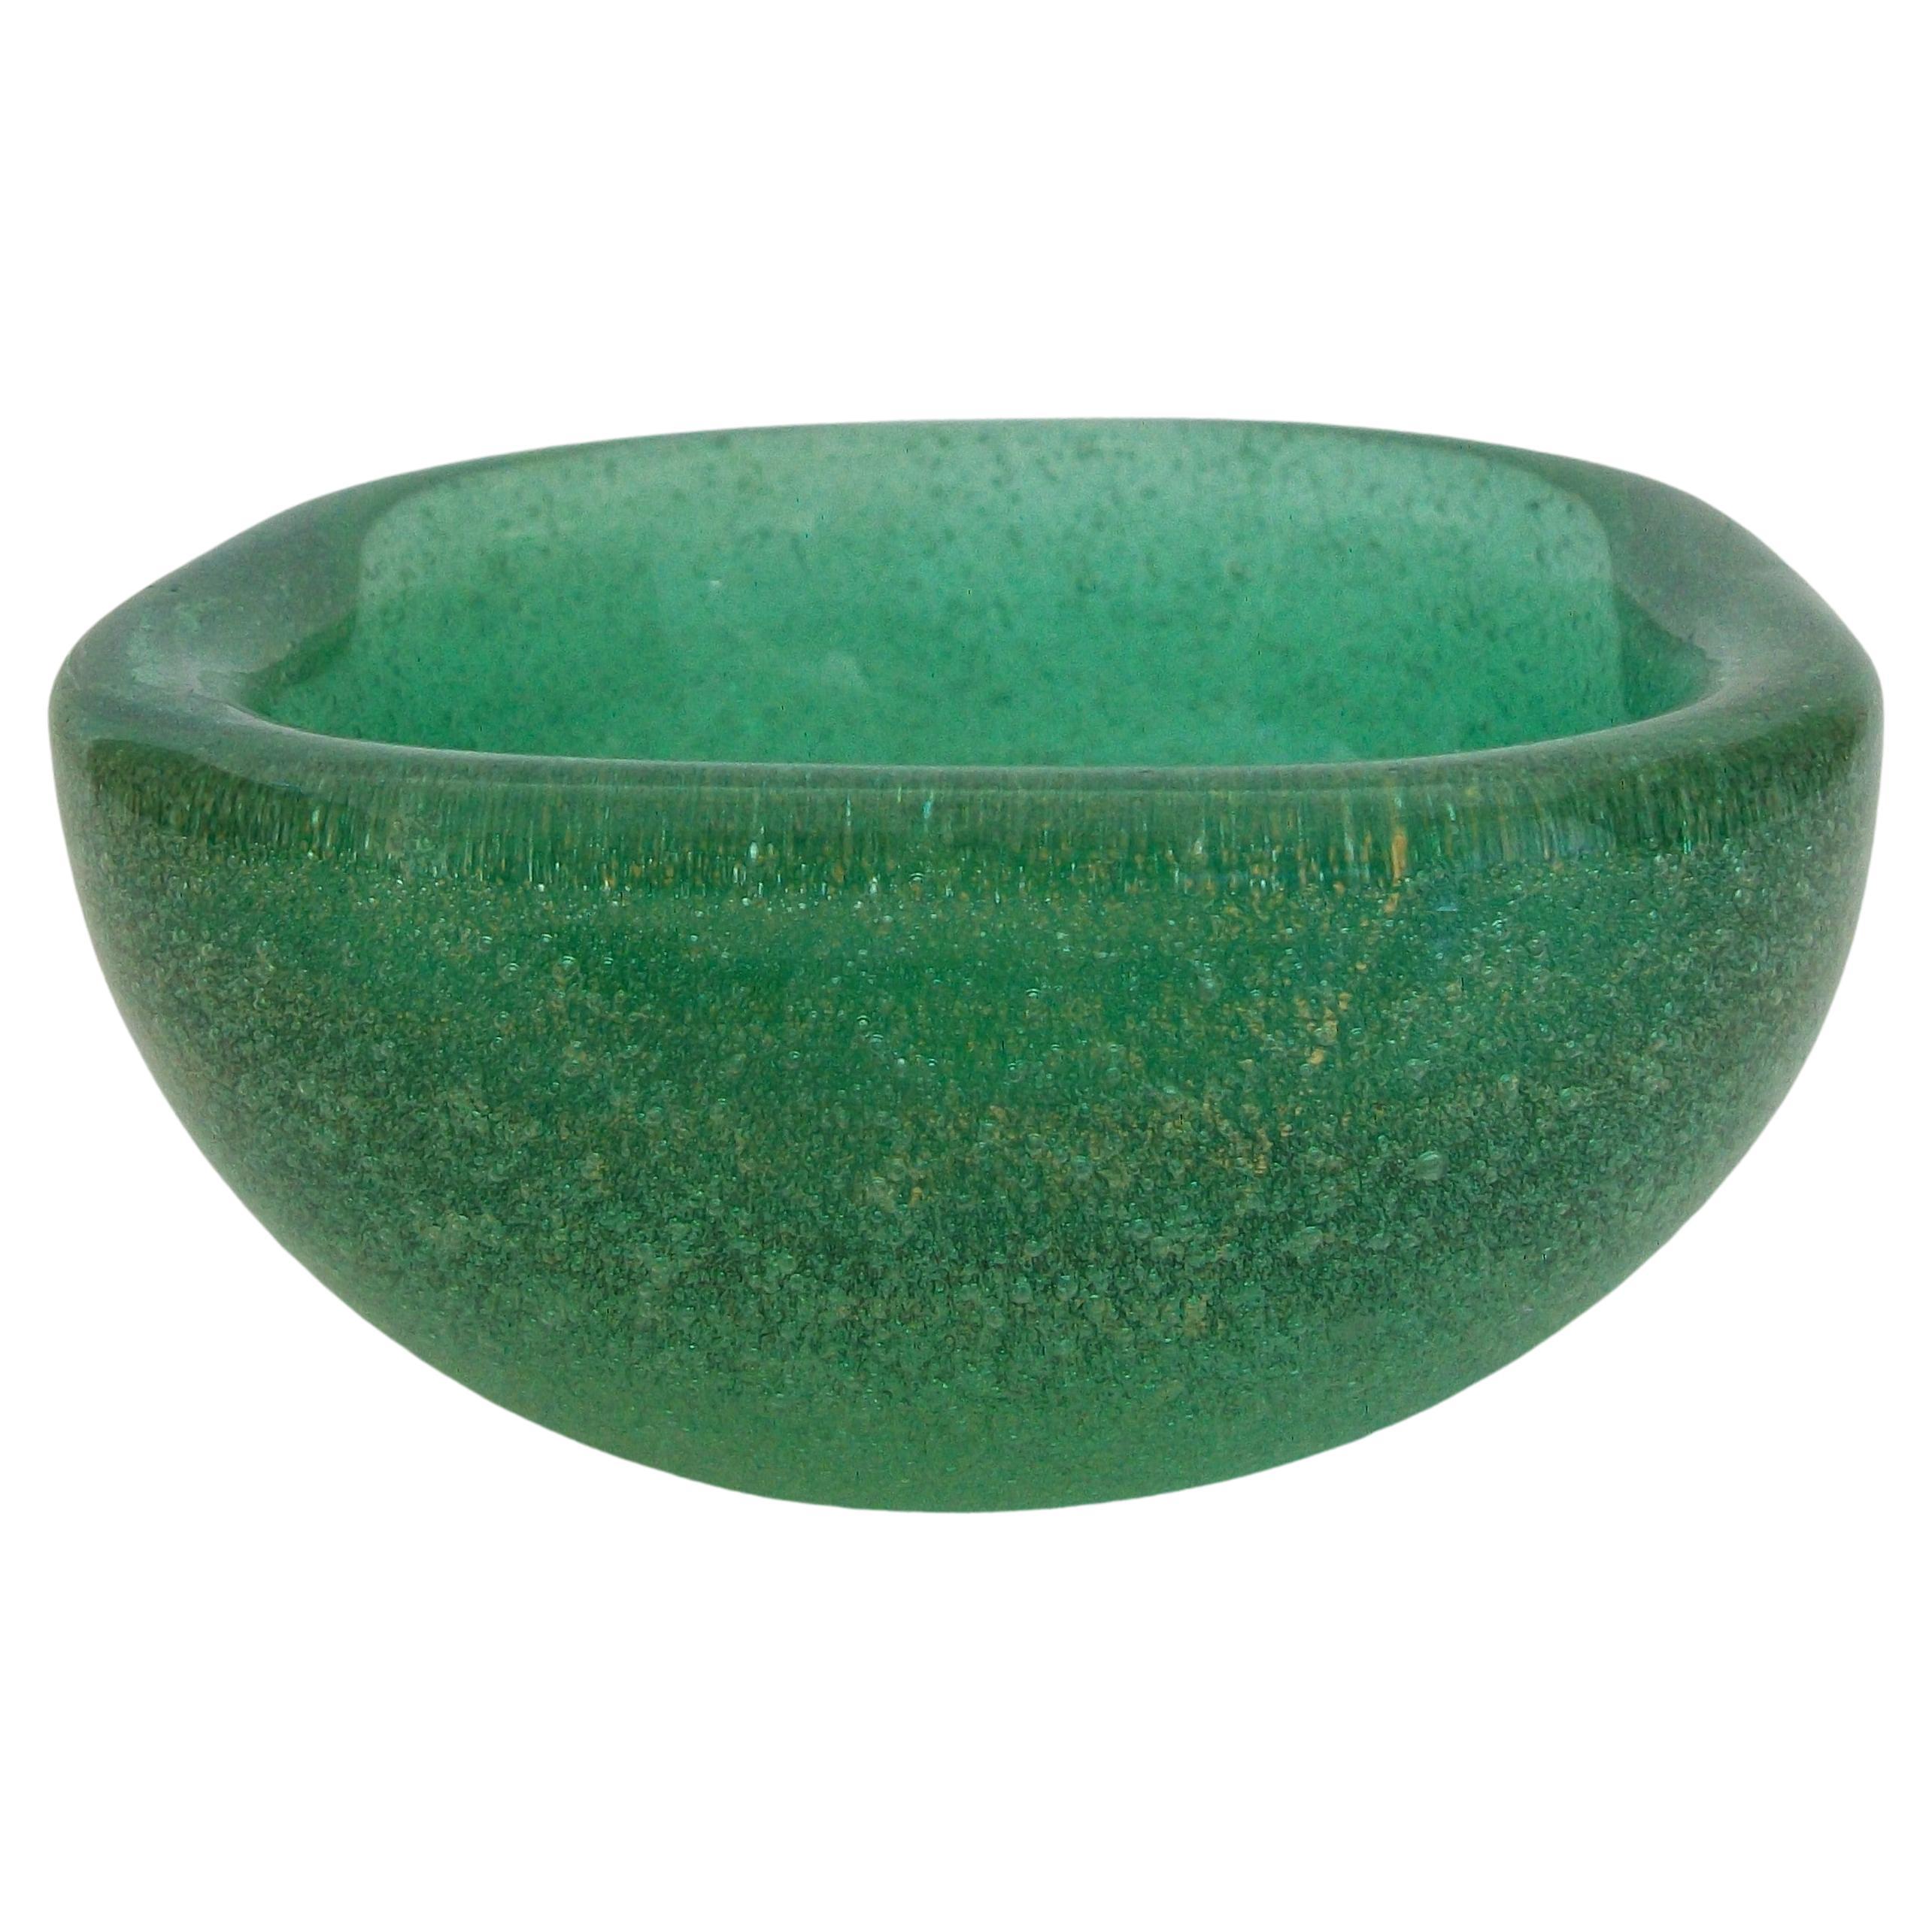 VENINI - CARLO SCARPA - Sommerso Bollicine Green Glass Bowl, Italy, Circa 1940